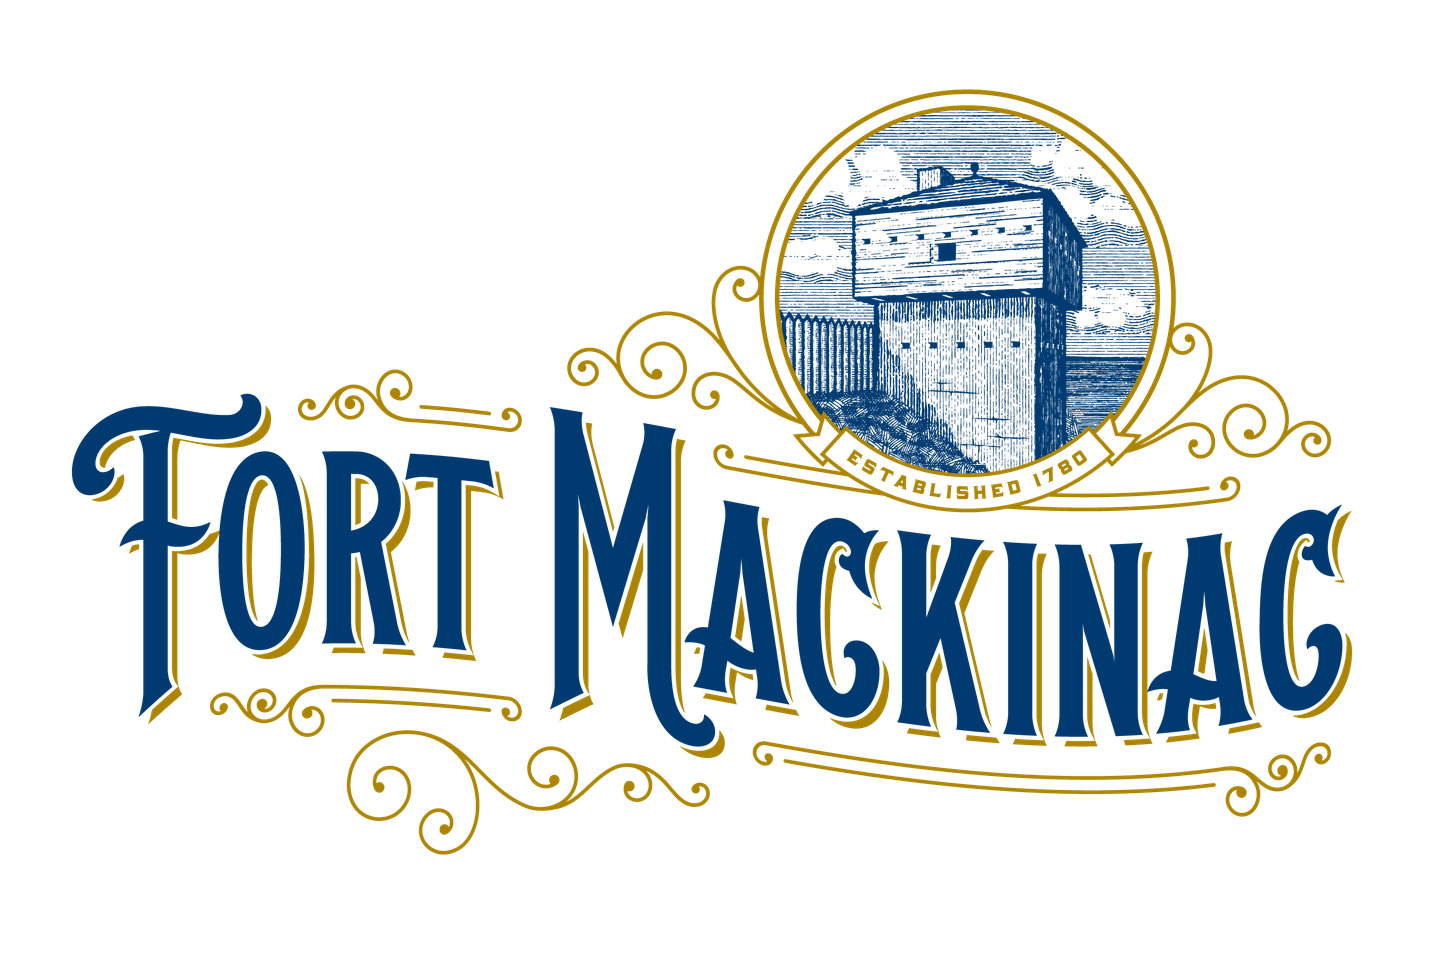 Fort Mackinac Png